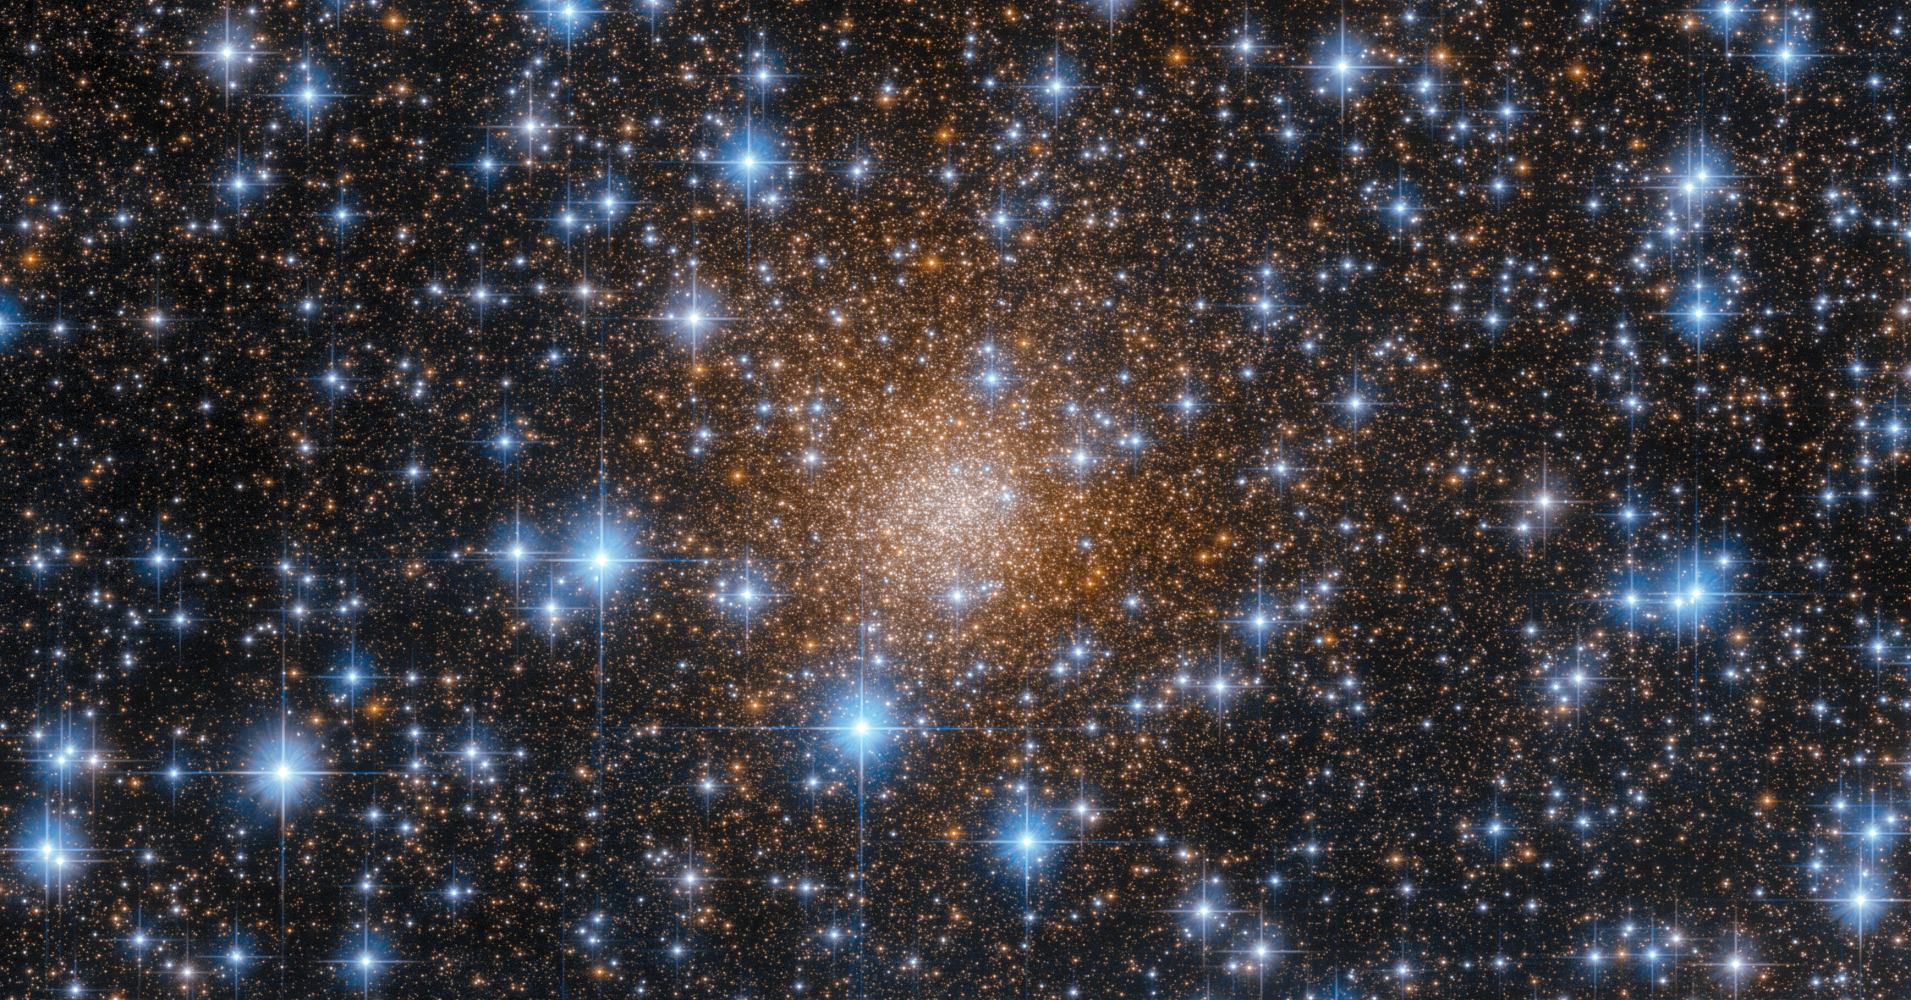 Hubbleov pogled na zvijezde (NASA)